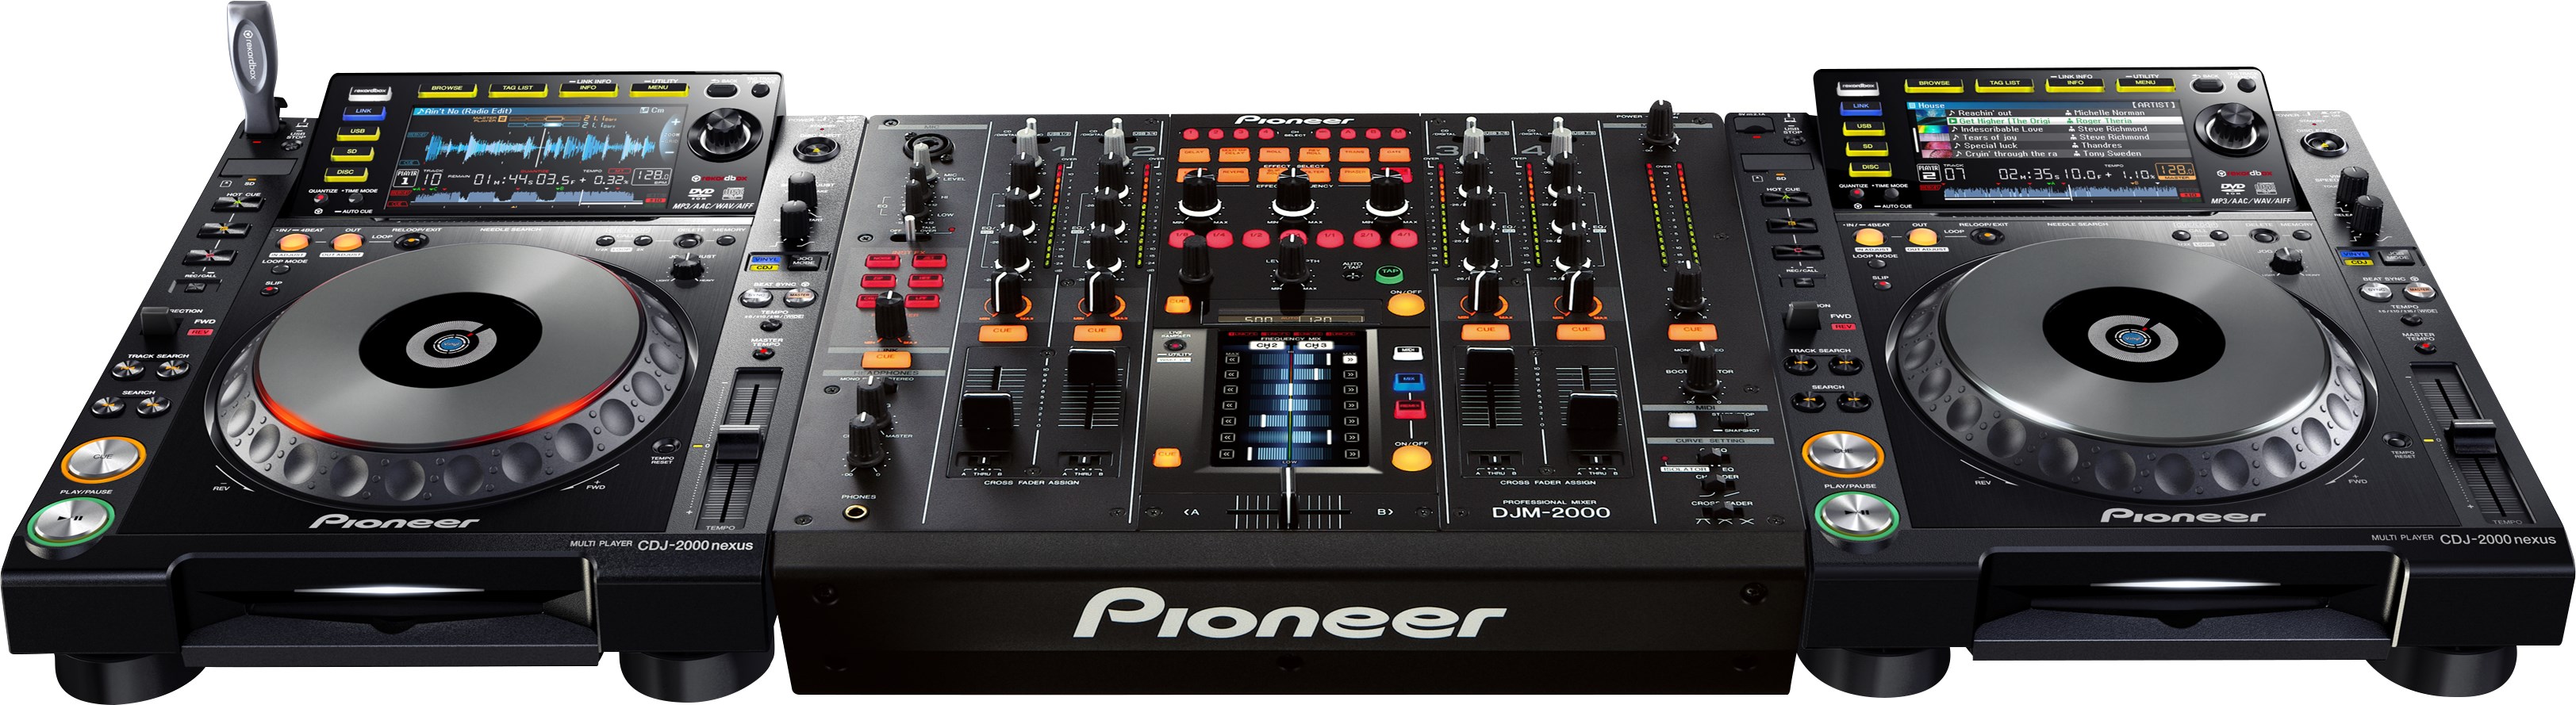 Pioneer Dj Djm2000nexus - Mixer DJ - Variation 3